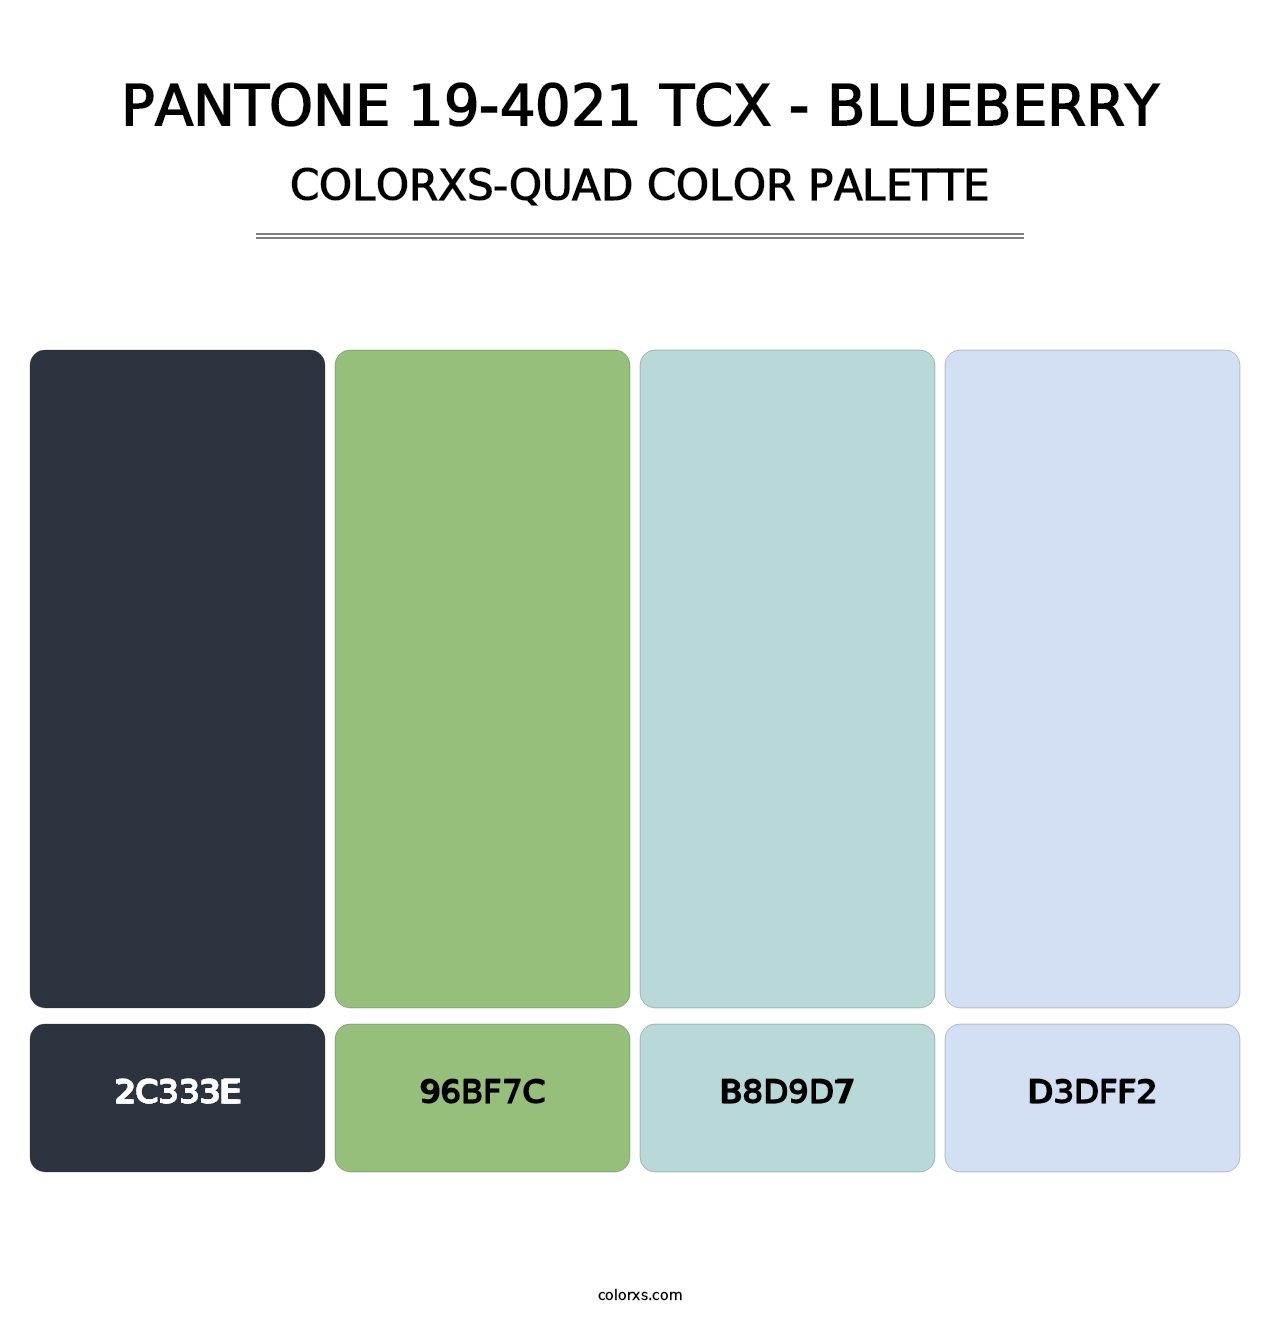 PANTONE 19-4021 TCX - Blueberry - Colorxs Quad Palette